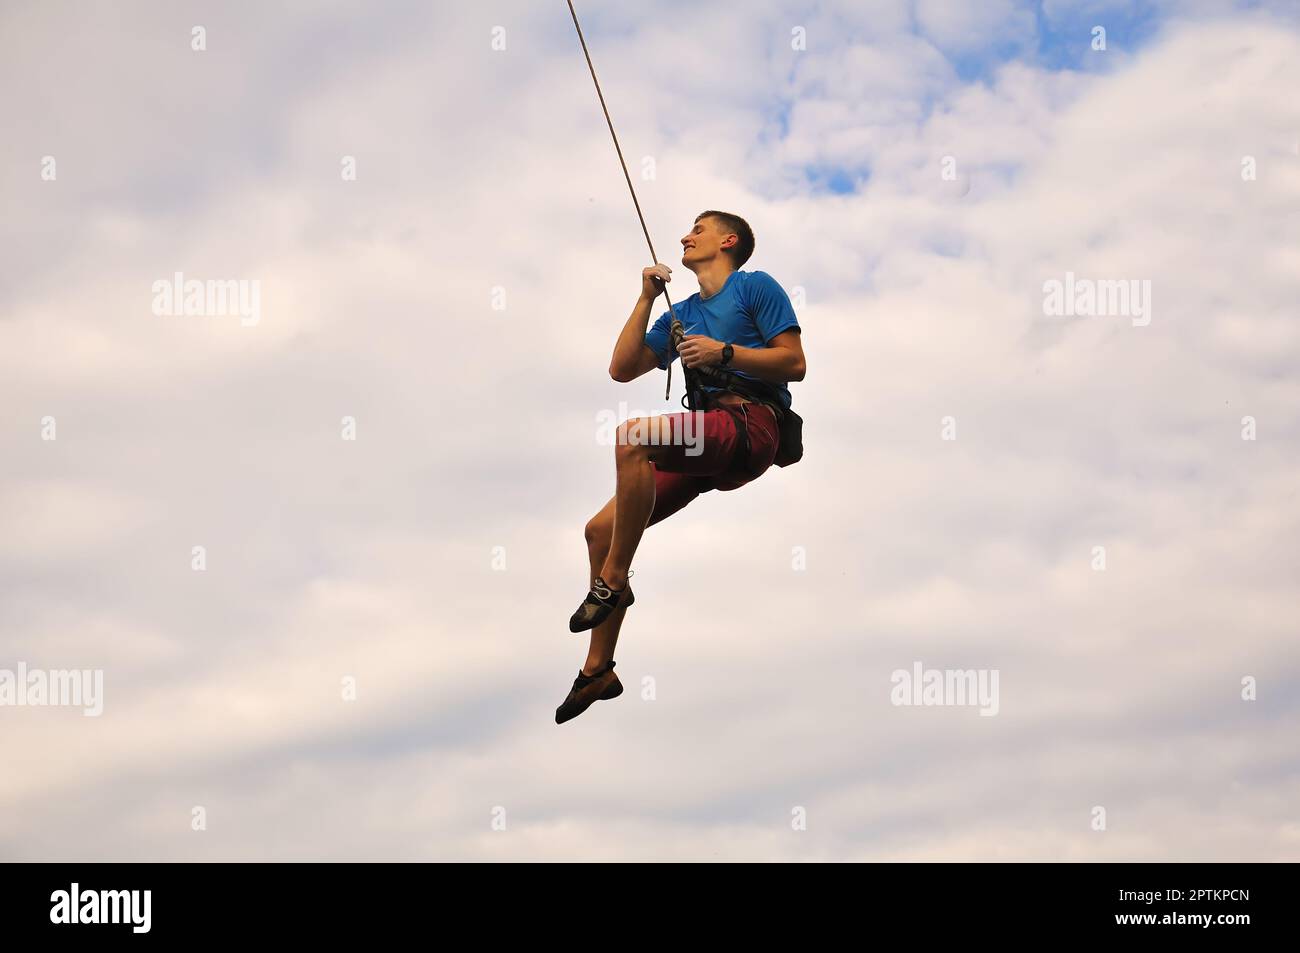 Kletterer hängt am Seil am Himmelshintergrund Stockfoto